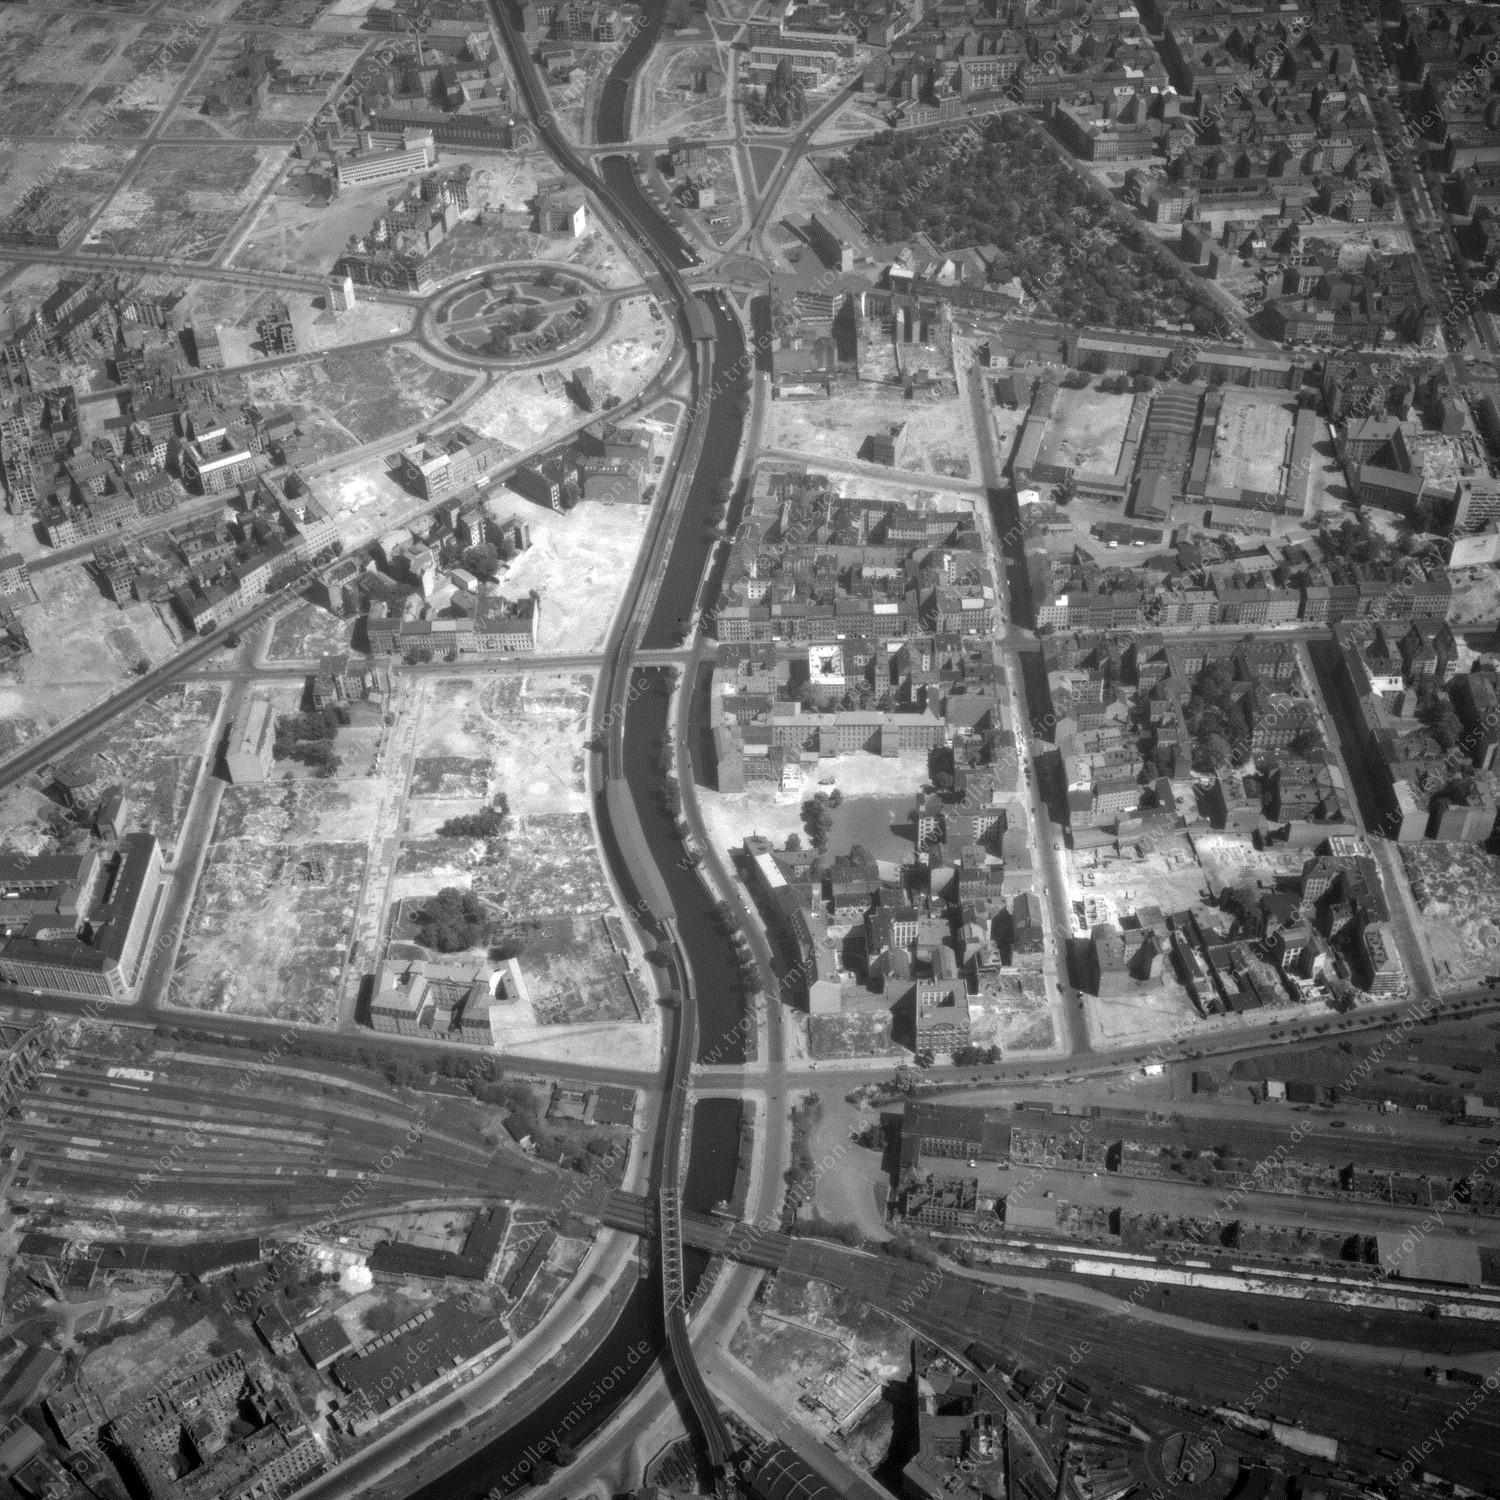 Alte Fotos und Luftbilder von Berlin - Luftbildaufnahme Nr. 06 - Historische Luftaufnahmen von West-Berlin aus dem Jahr 1954 - Flugstrecke India